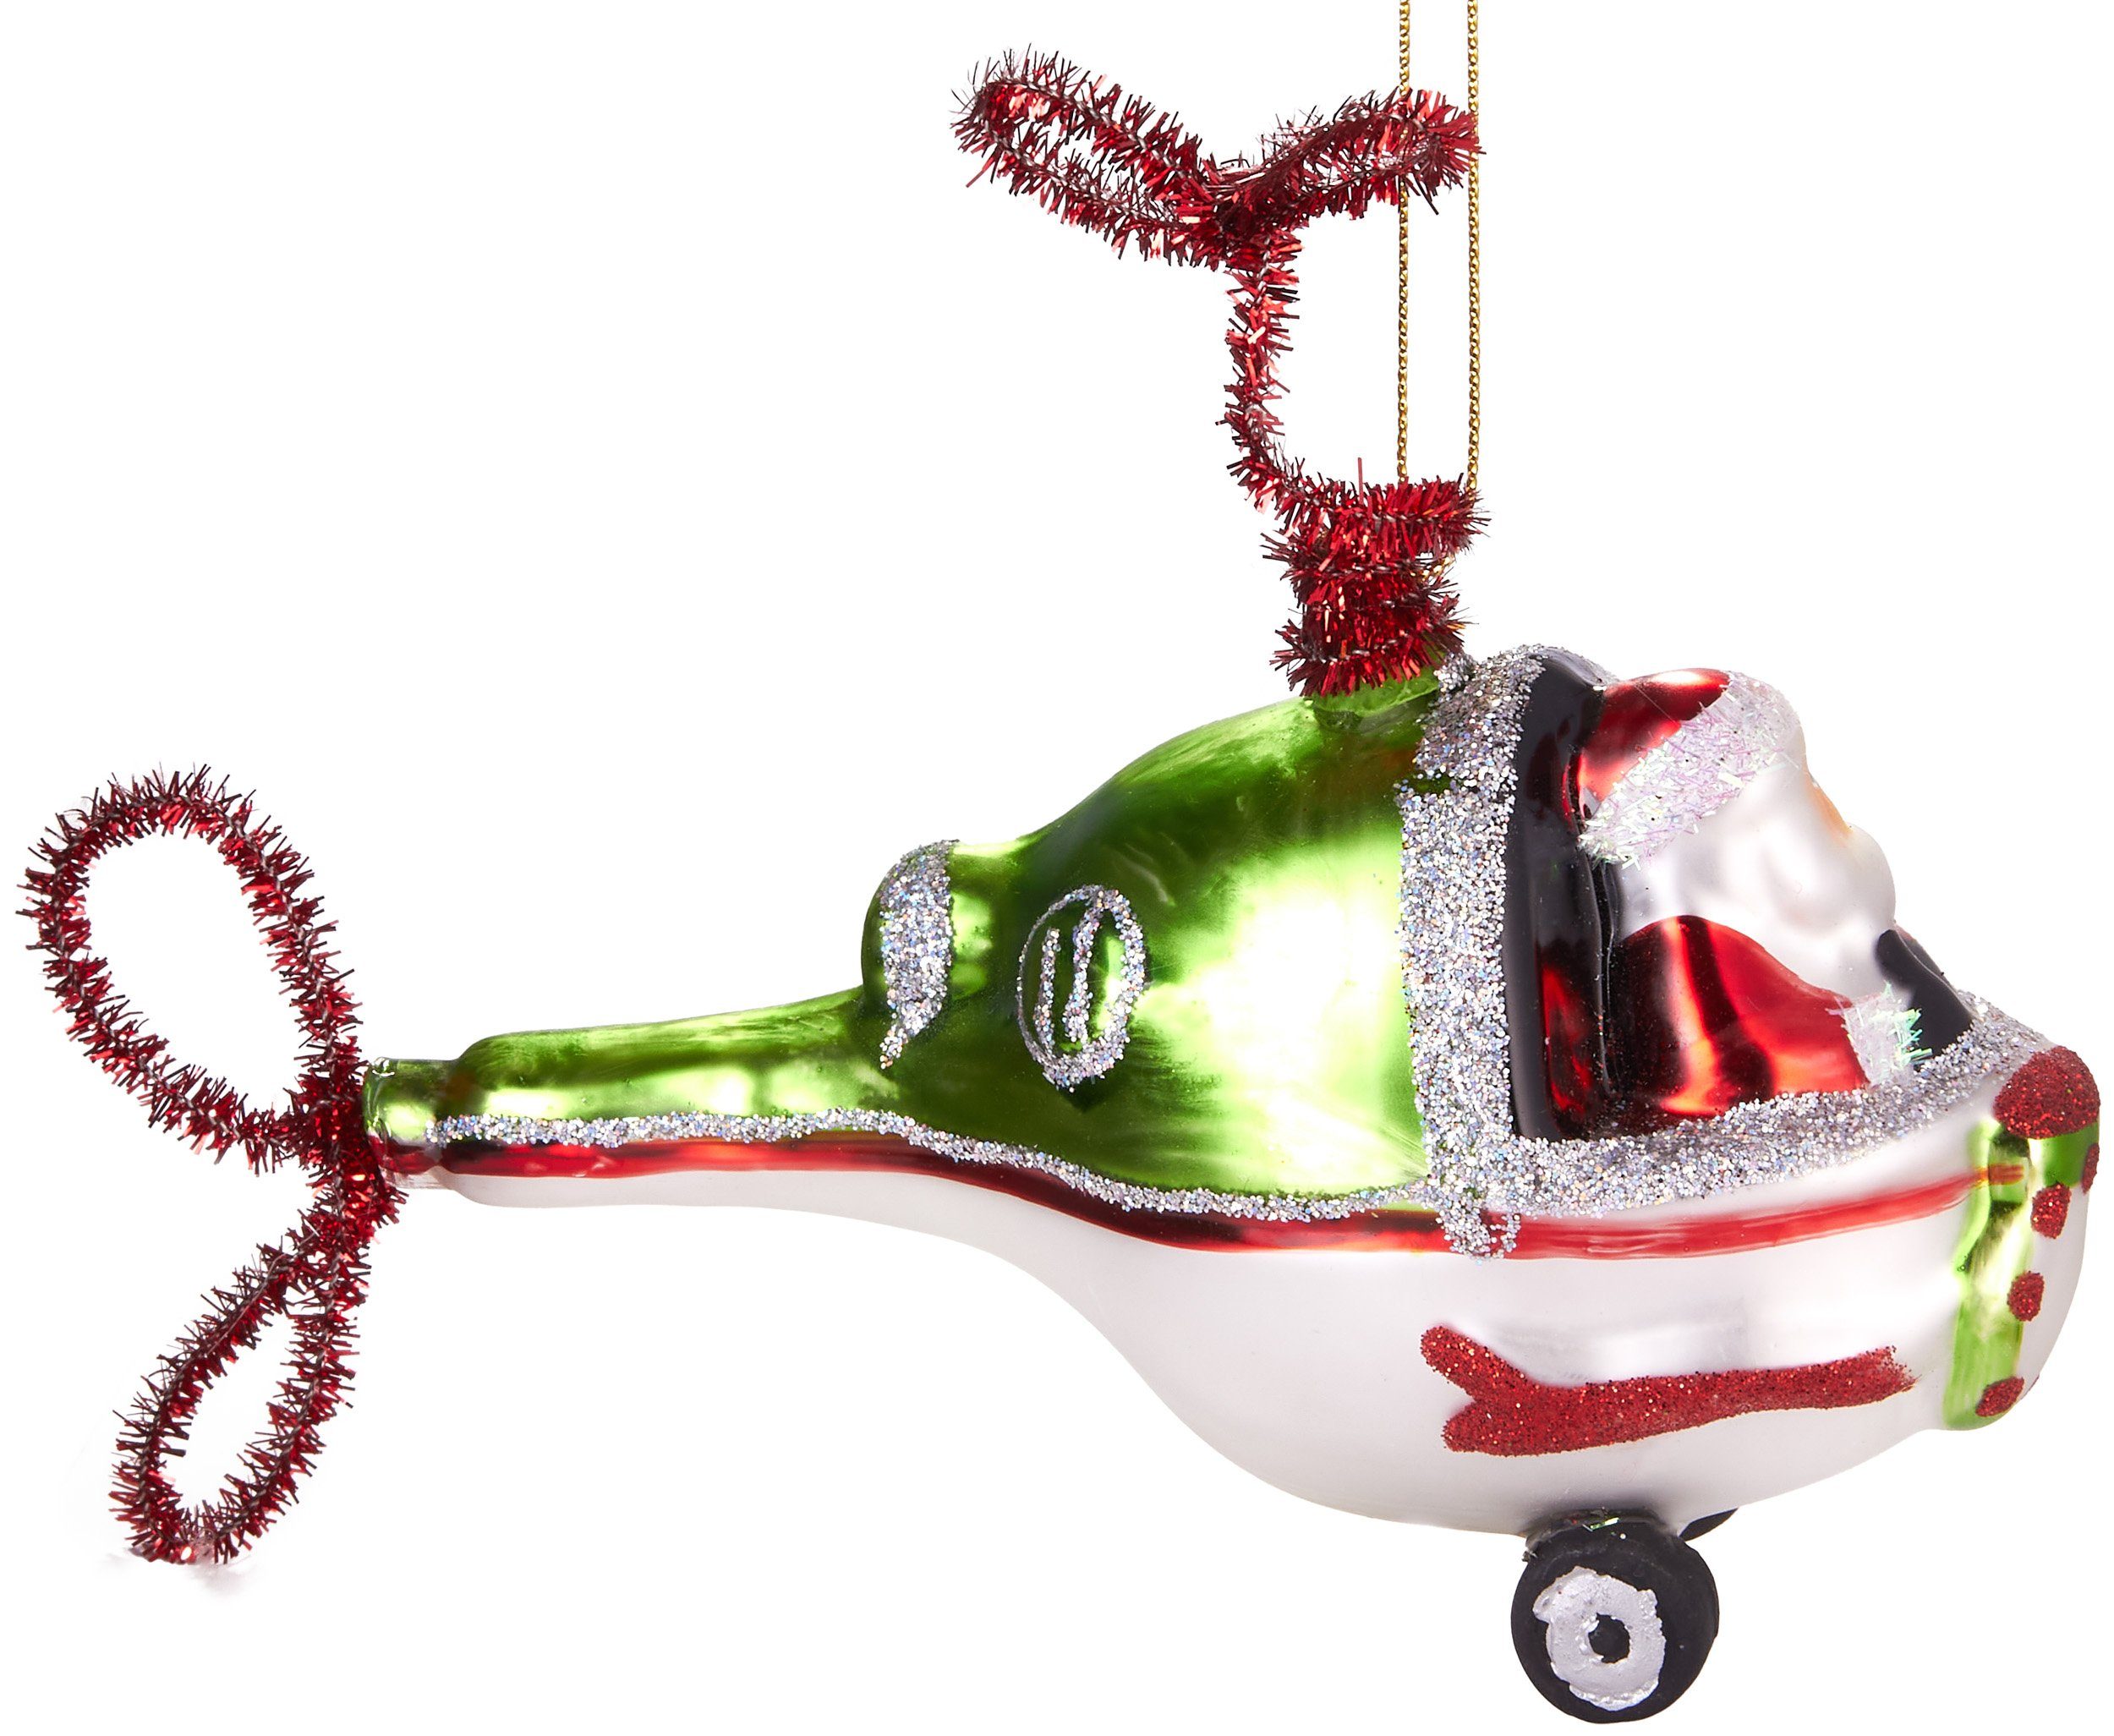 aus Handbemalte 11 Heli, Glas, Weihnachtskugel - im fliegender Helikopter Weihnachtsanhänger Christbaumschmuck cm Hubschrauber mundgeblasenes Unikat, BRUBAKER Weihnachtsmann lustige Baumkugel